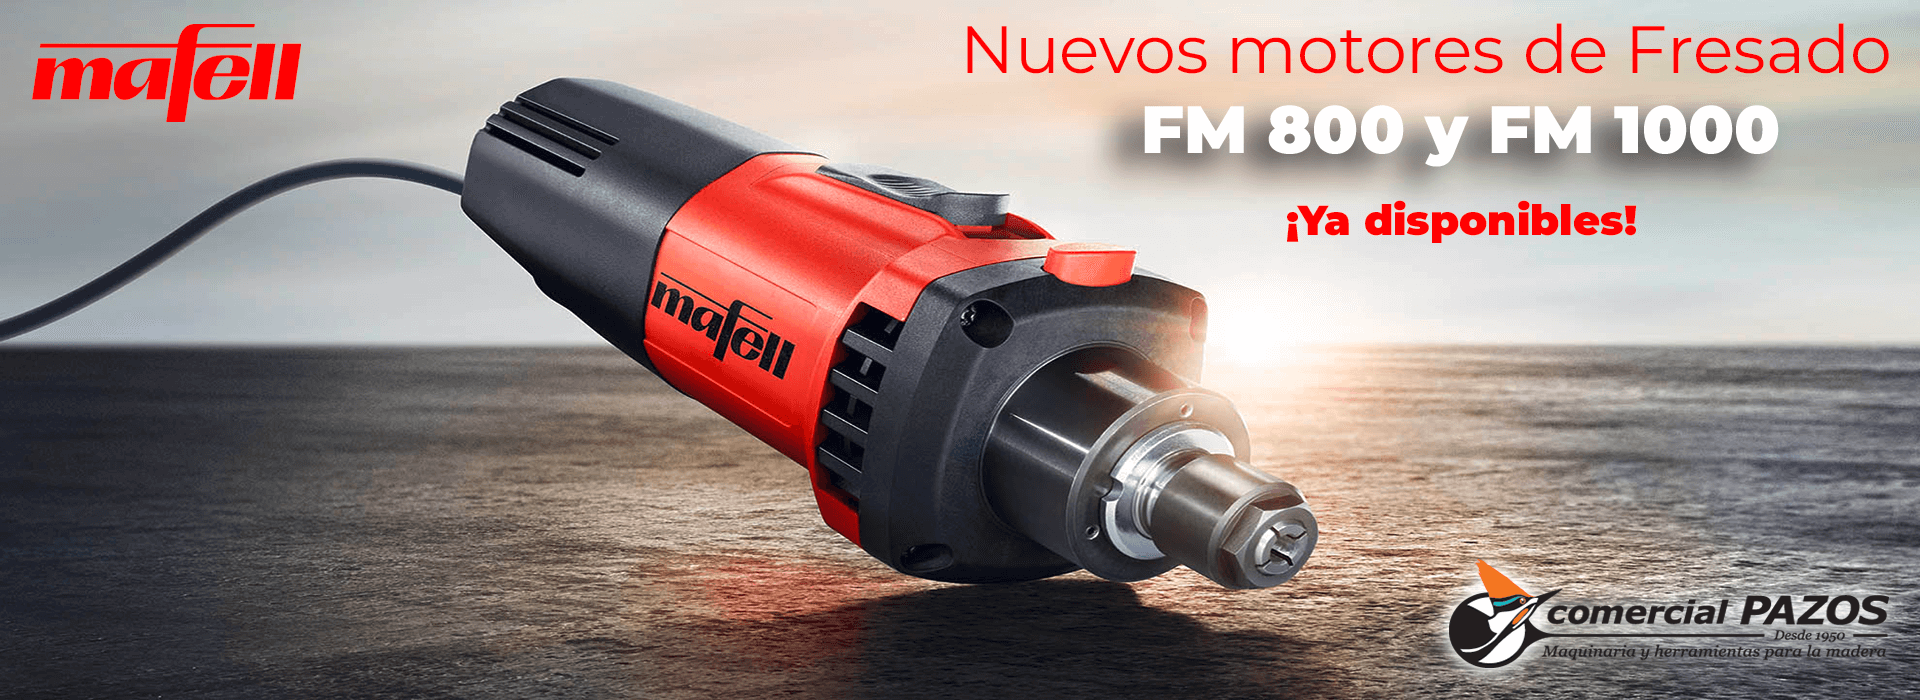 Promoción Mafell Tienda Online - Motores de fresado FM800 y FM1000